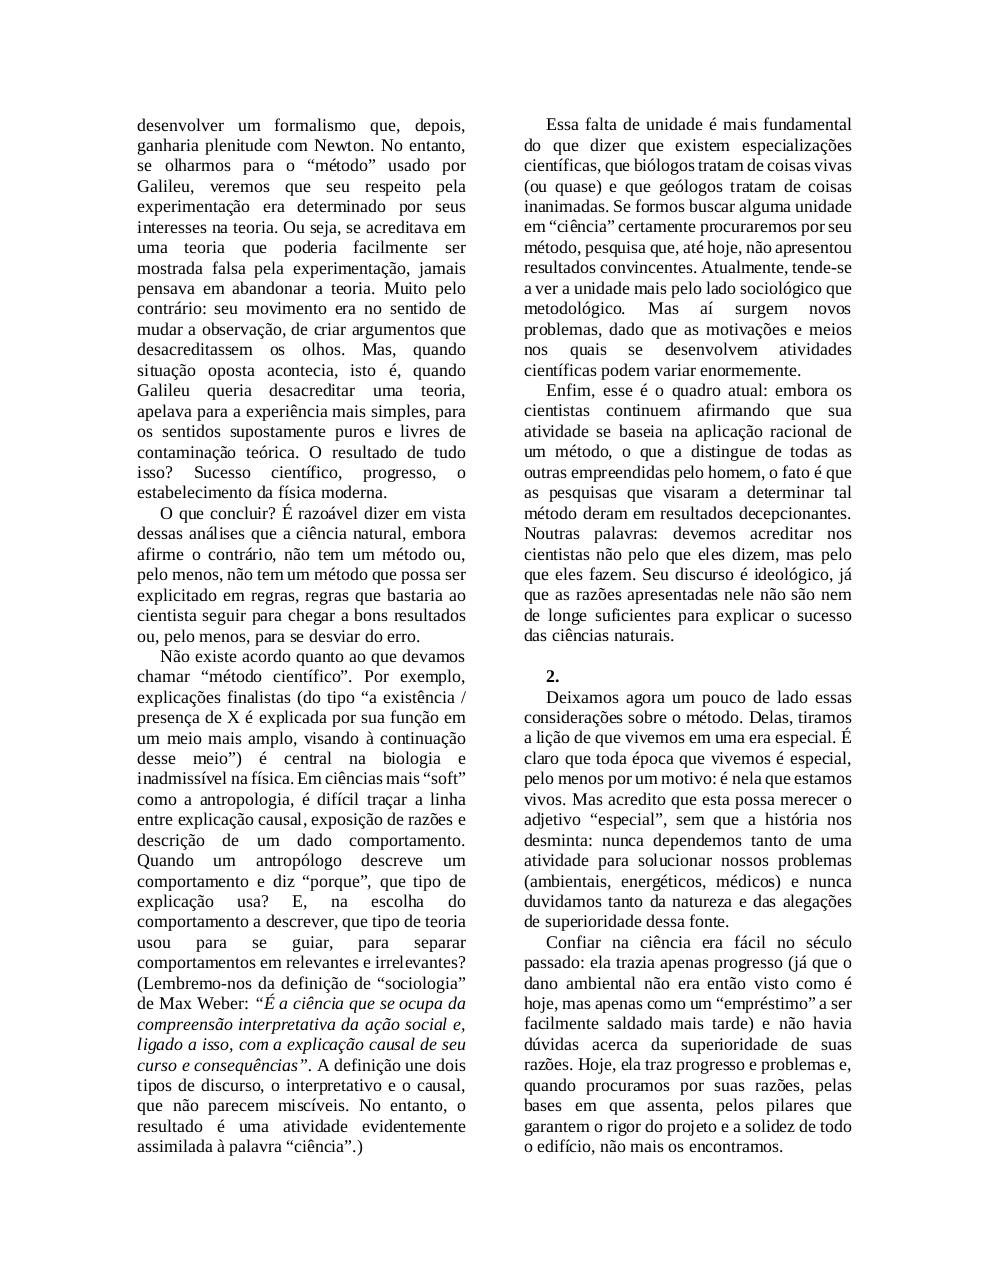 Jornalismo e CiÃªncia.pdf - page 2/9